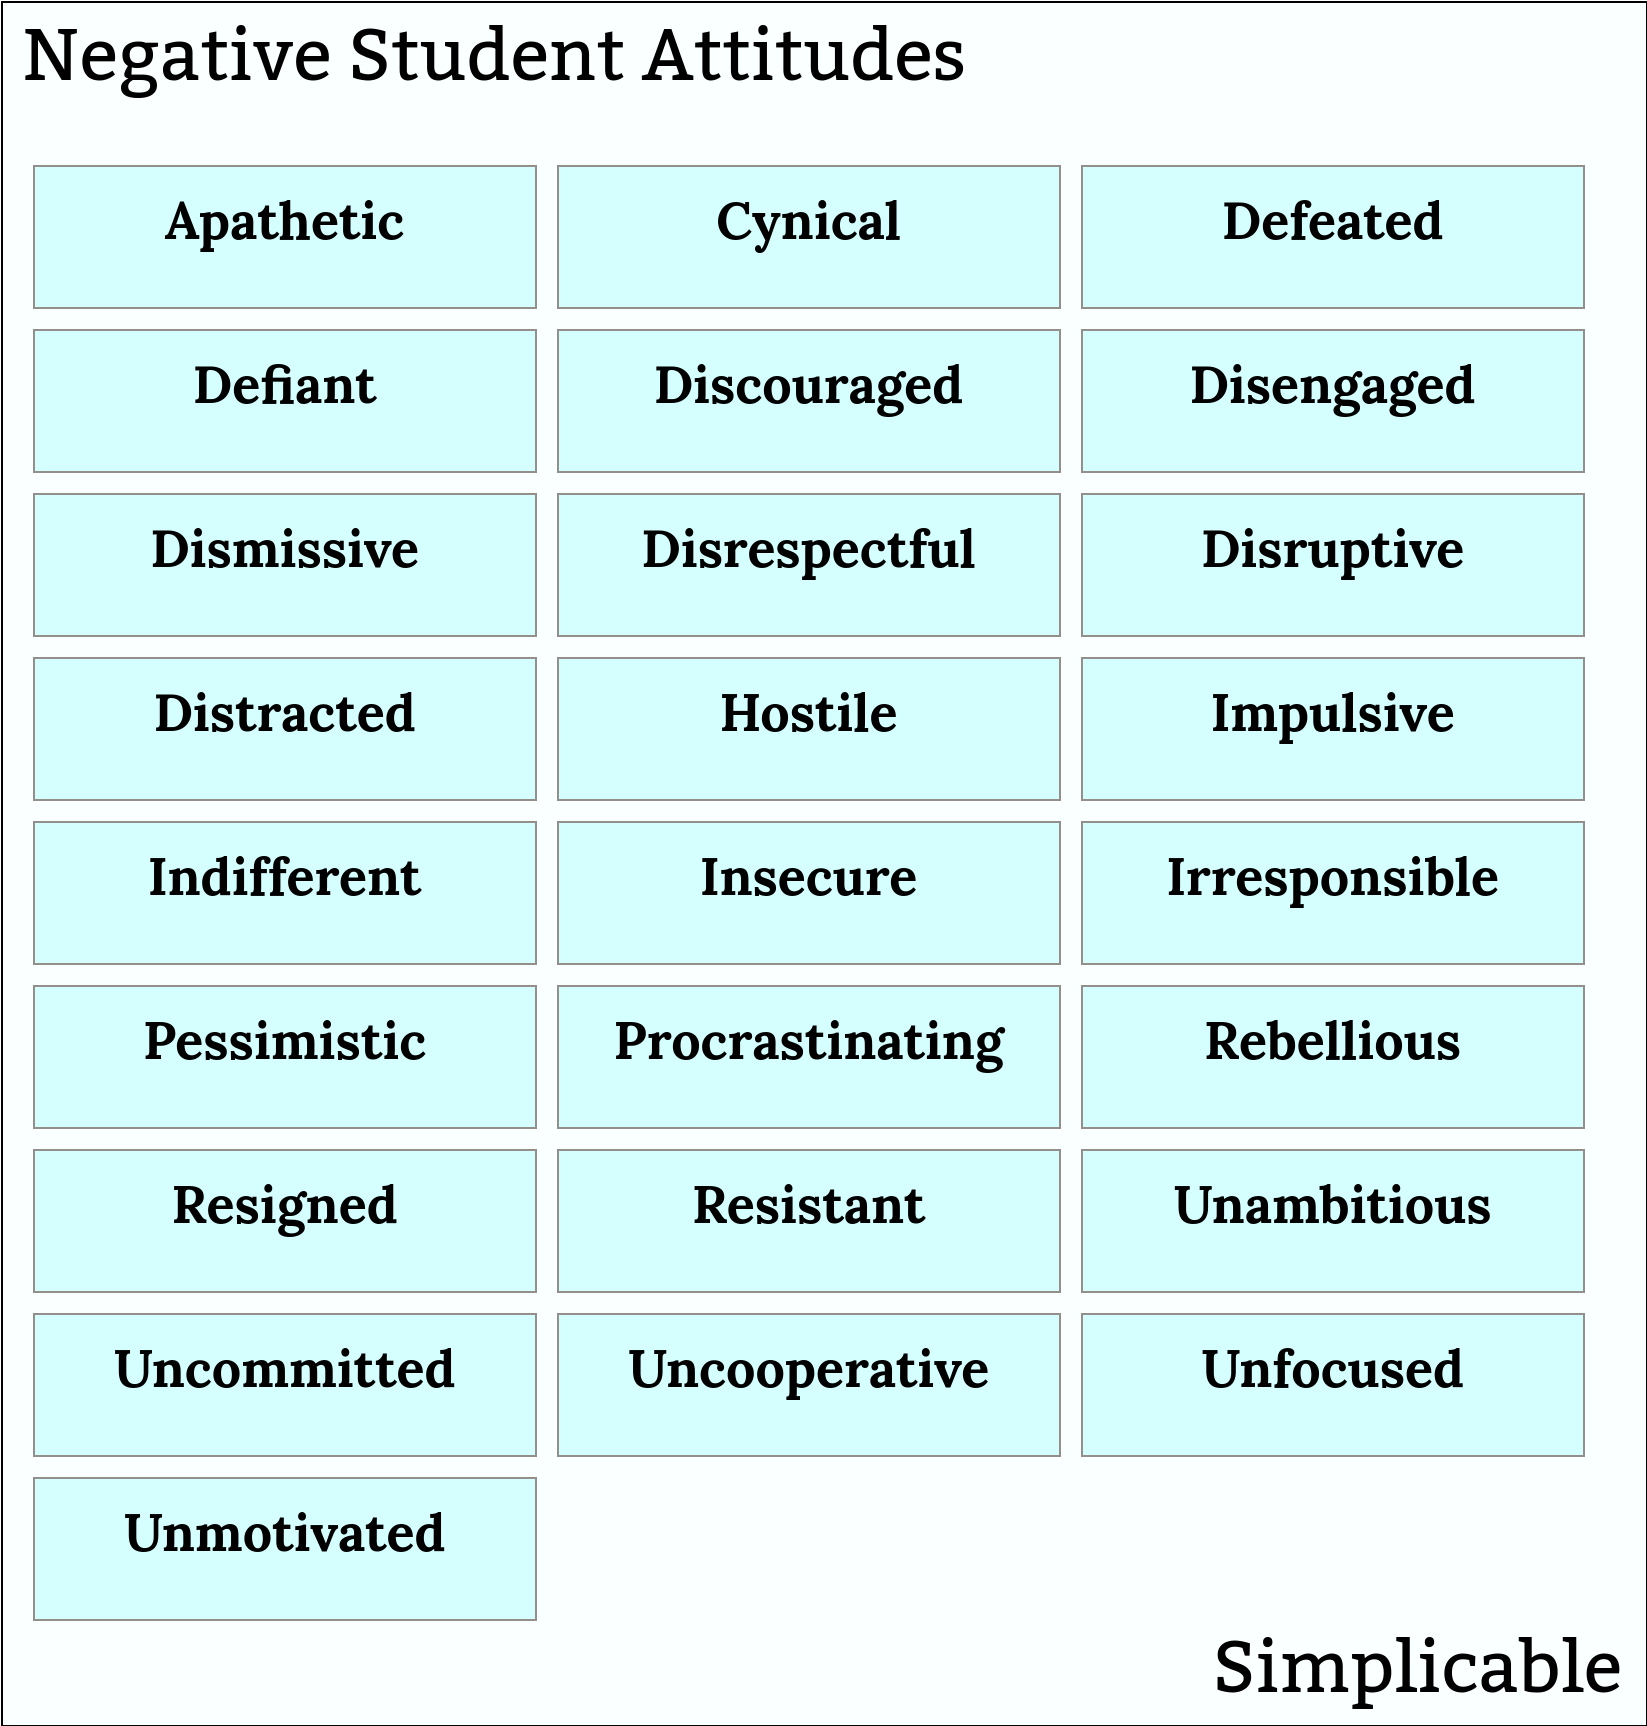 negative student attitudes simplicable